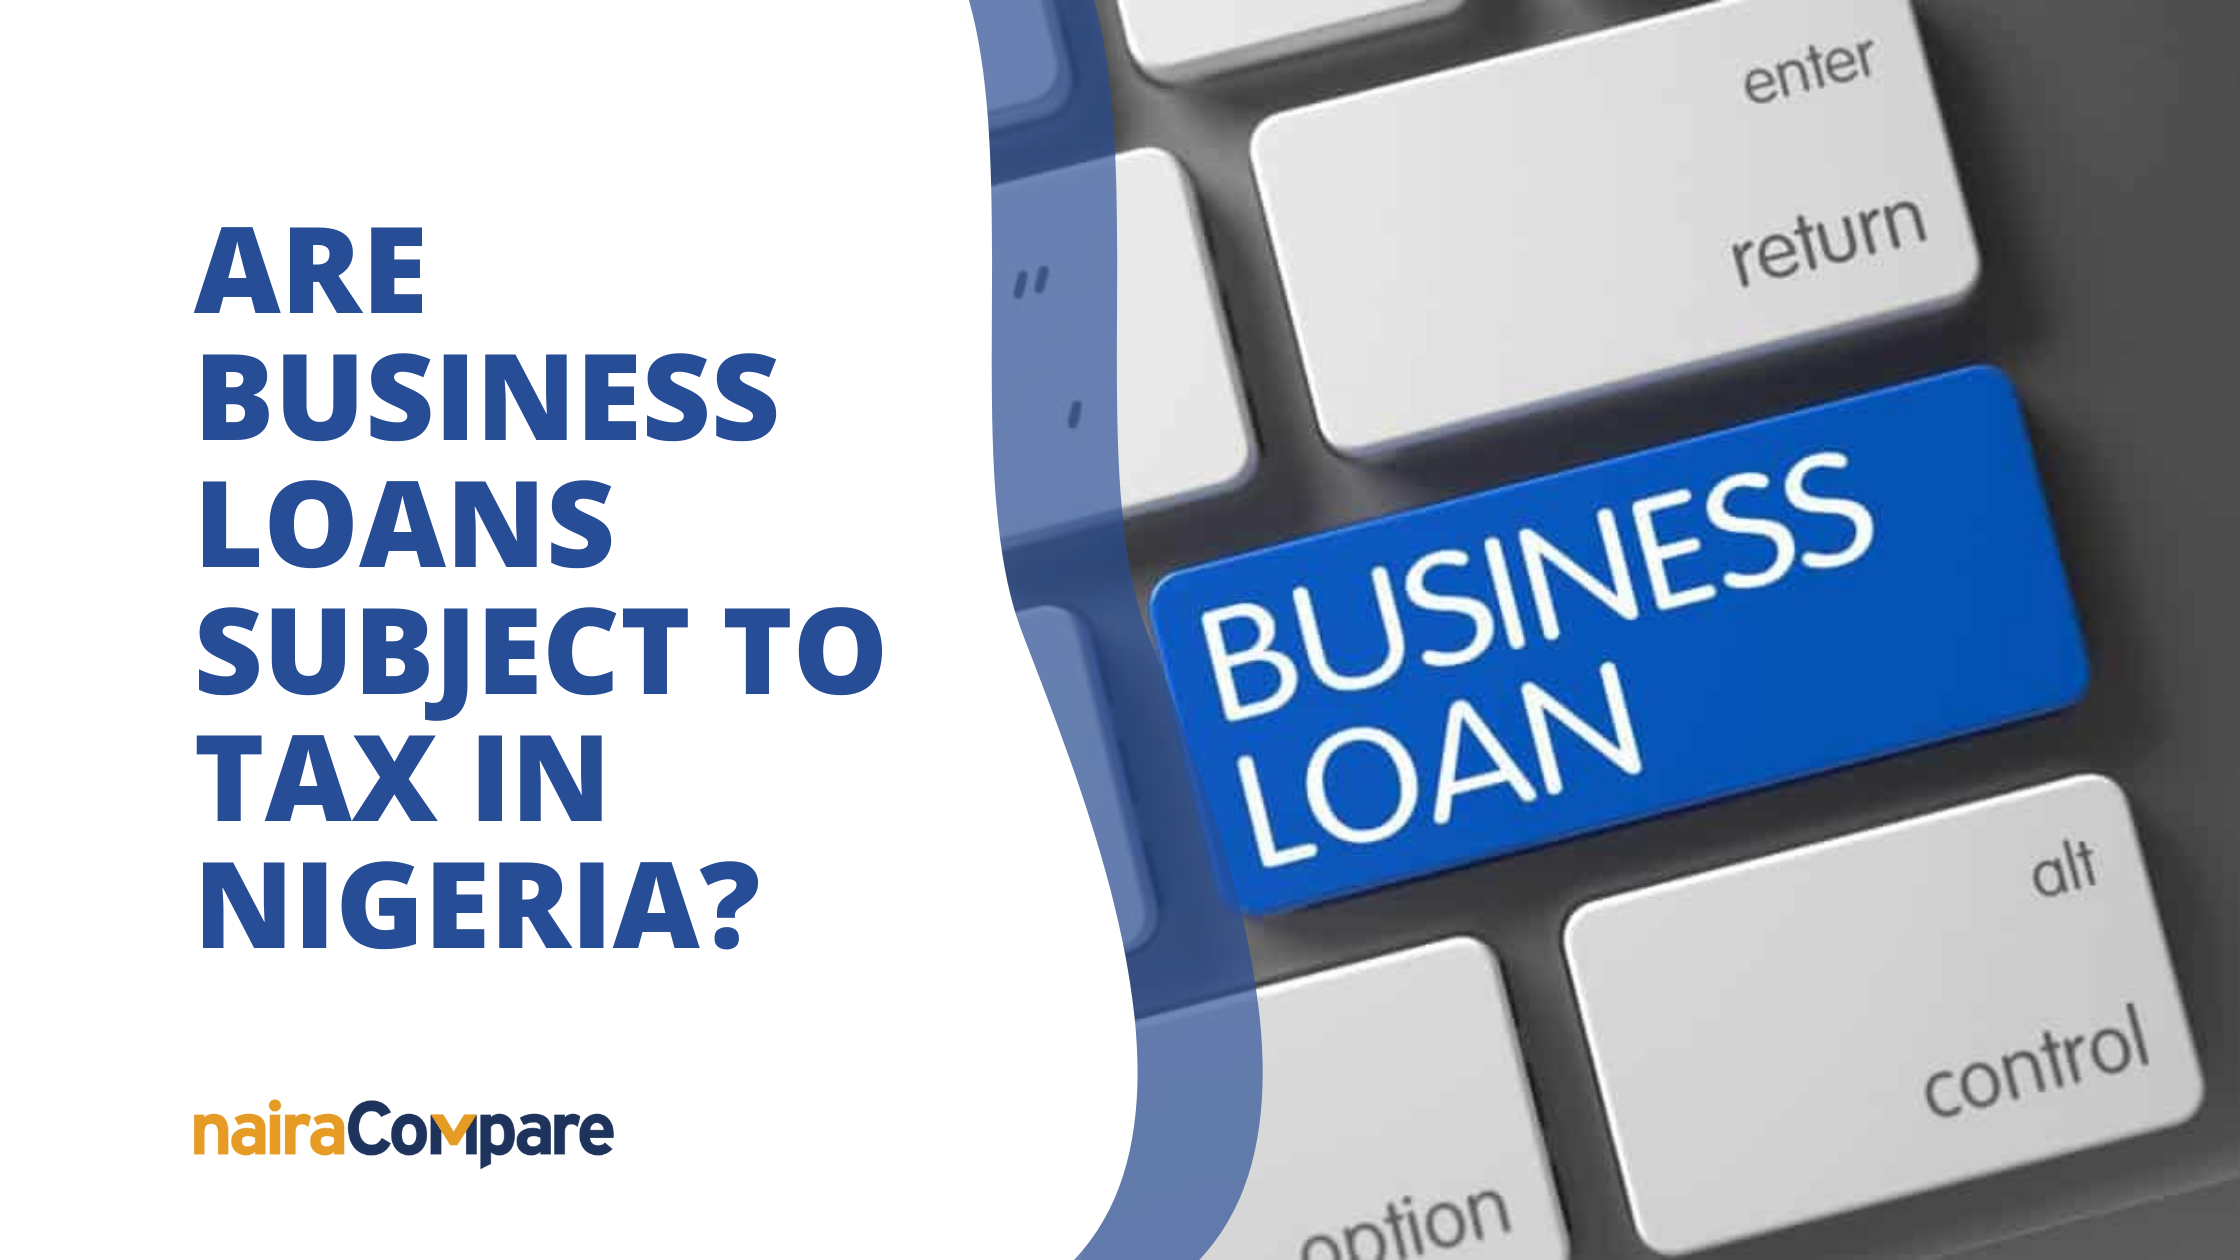 Non taxable business loans in Nigeria